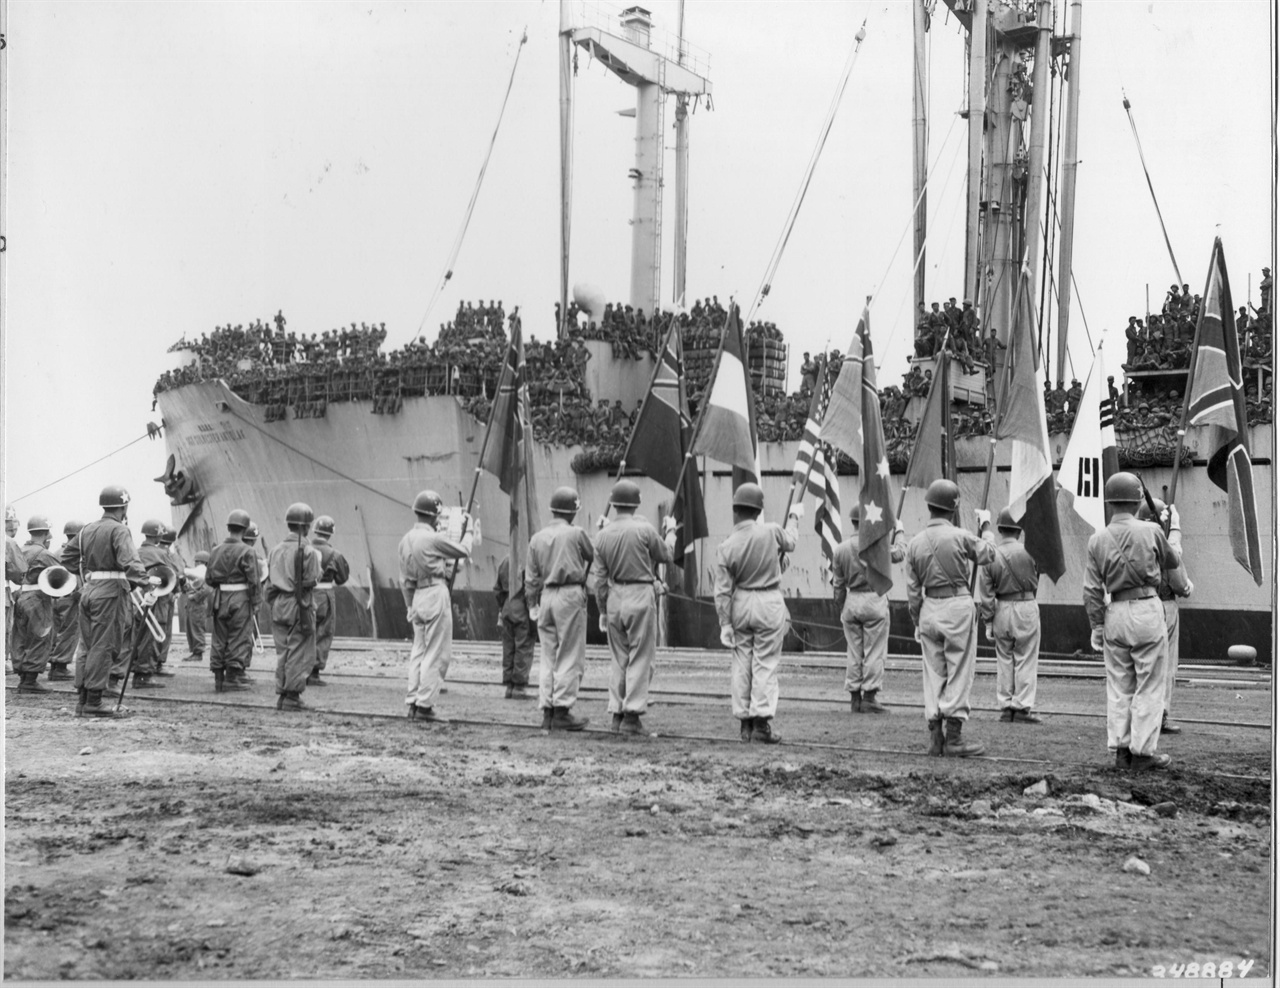 1950. 9. 20. 부산. 한국전에 참전하는 유엔군 병력을 태운 군함이 부산항에 입항하자
이들의 환영식을 거행하고 있다.